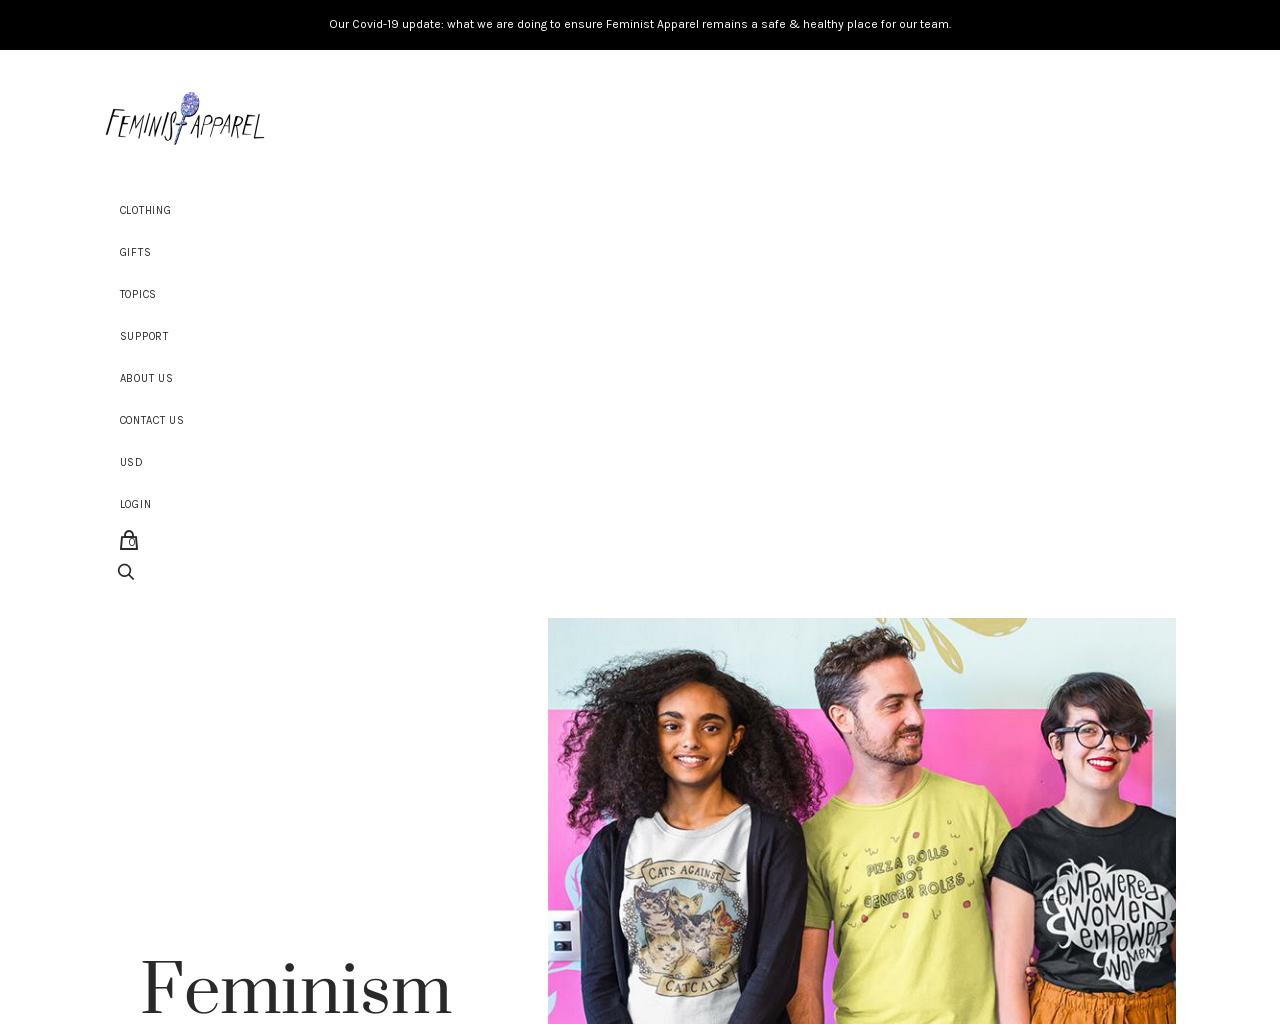 feministapparel.com